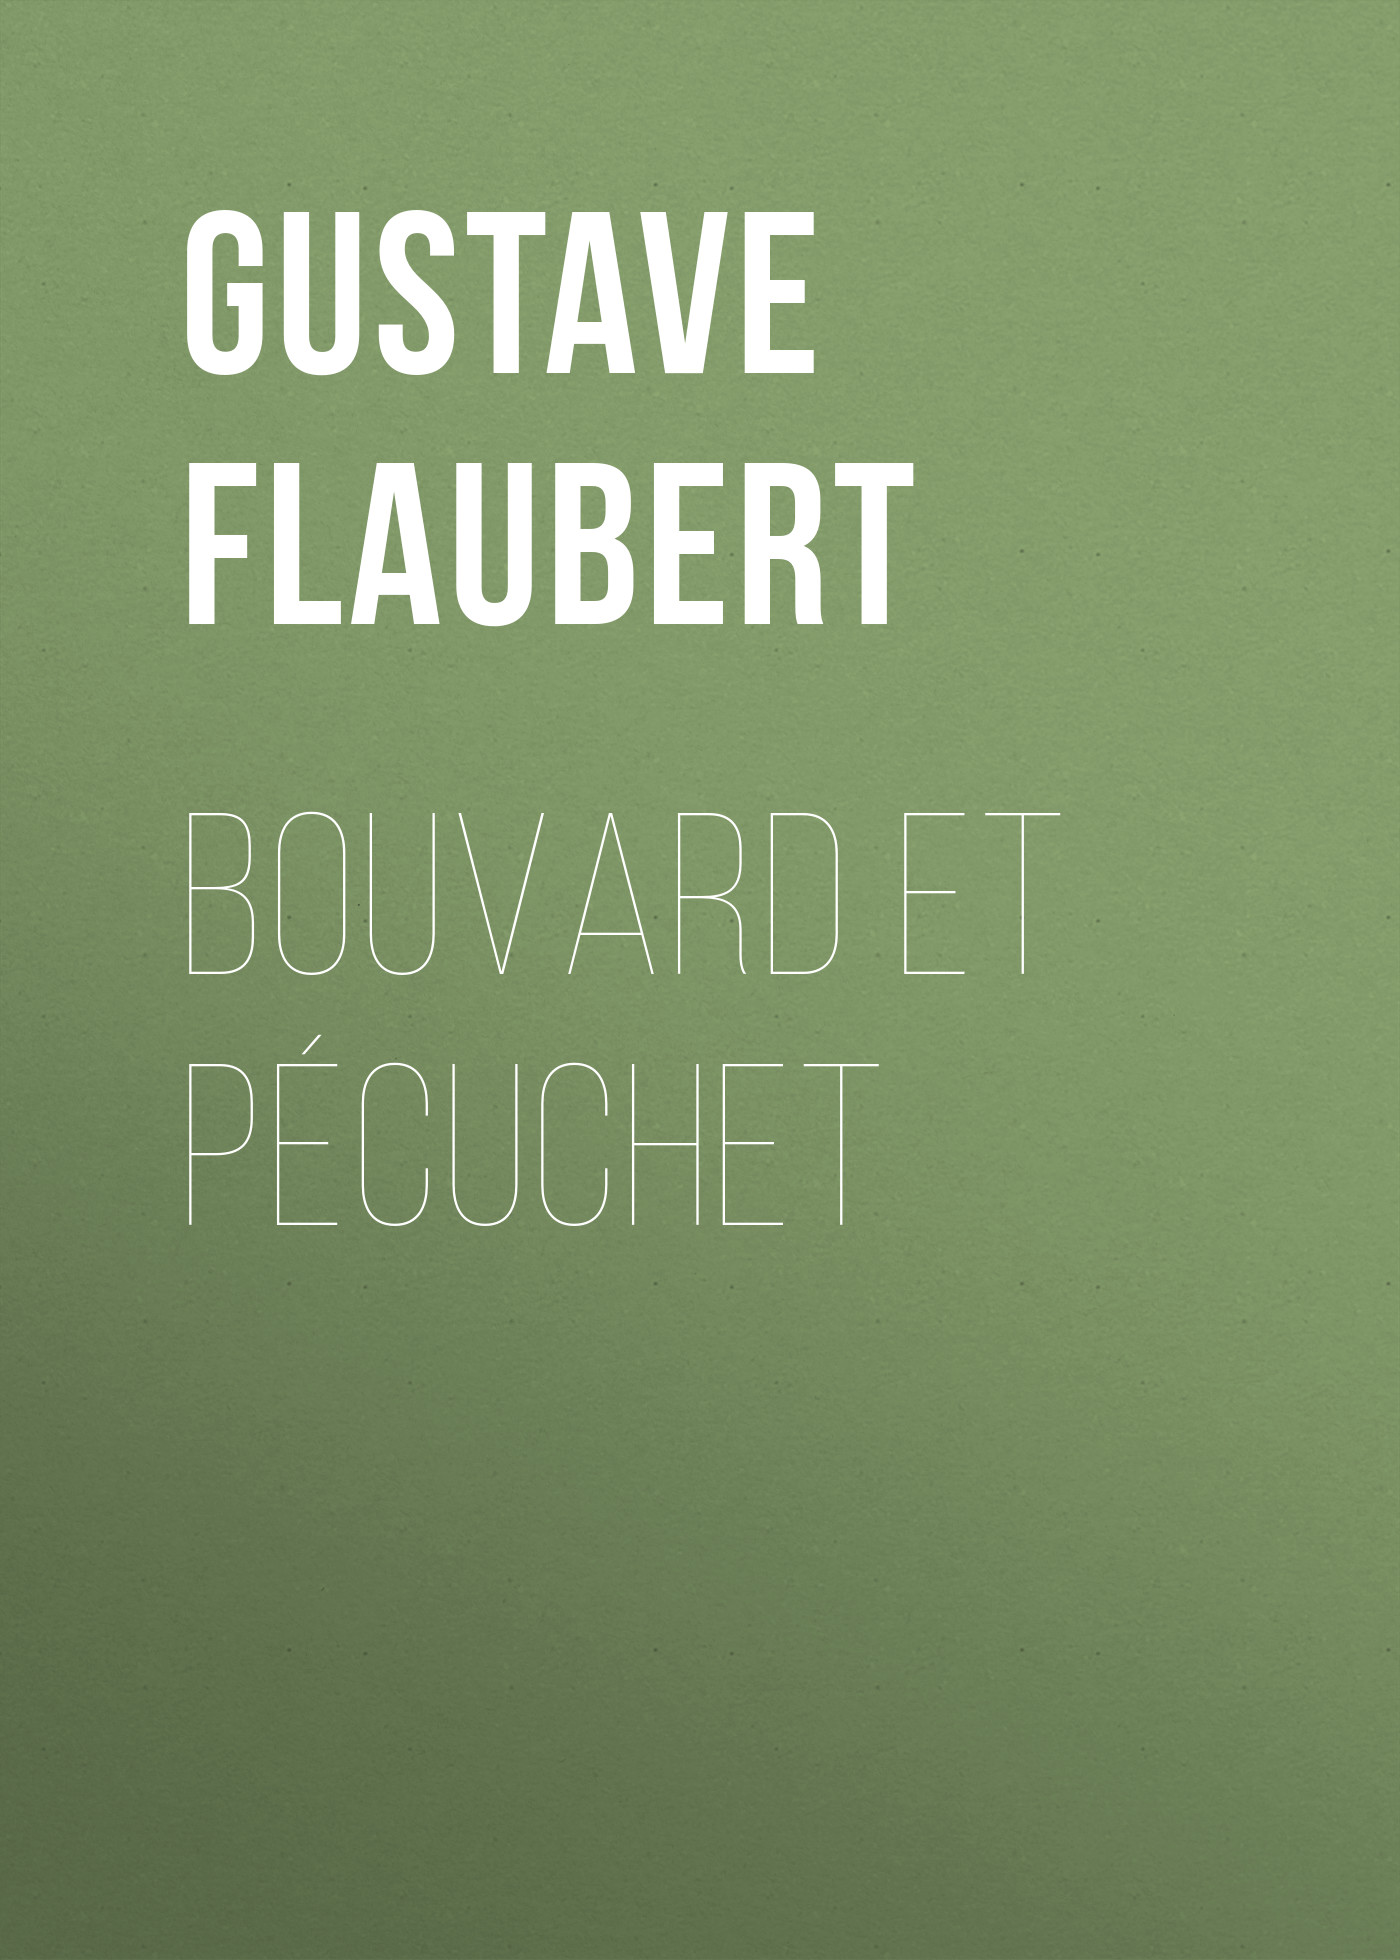 Книга Bouvard et Pécuchet из серии , созданная Gustave Flaubert, может относится к жанру Зарубежная старинная литература, Зарубежная классика. Стоимость электронной книги Bouvard et Pécuchet с идентификатором 25202407 составляет 0 руб.